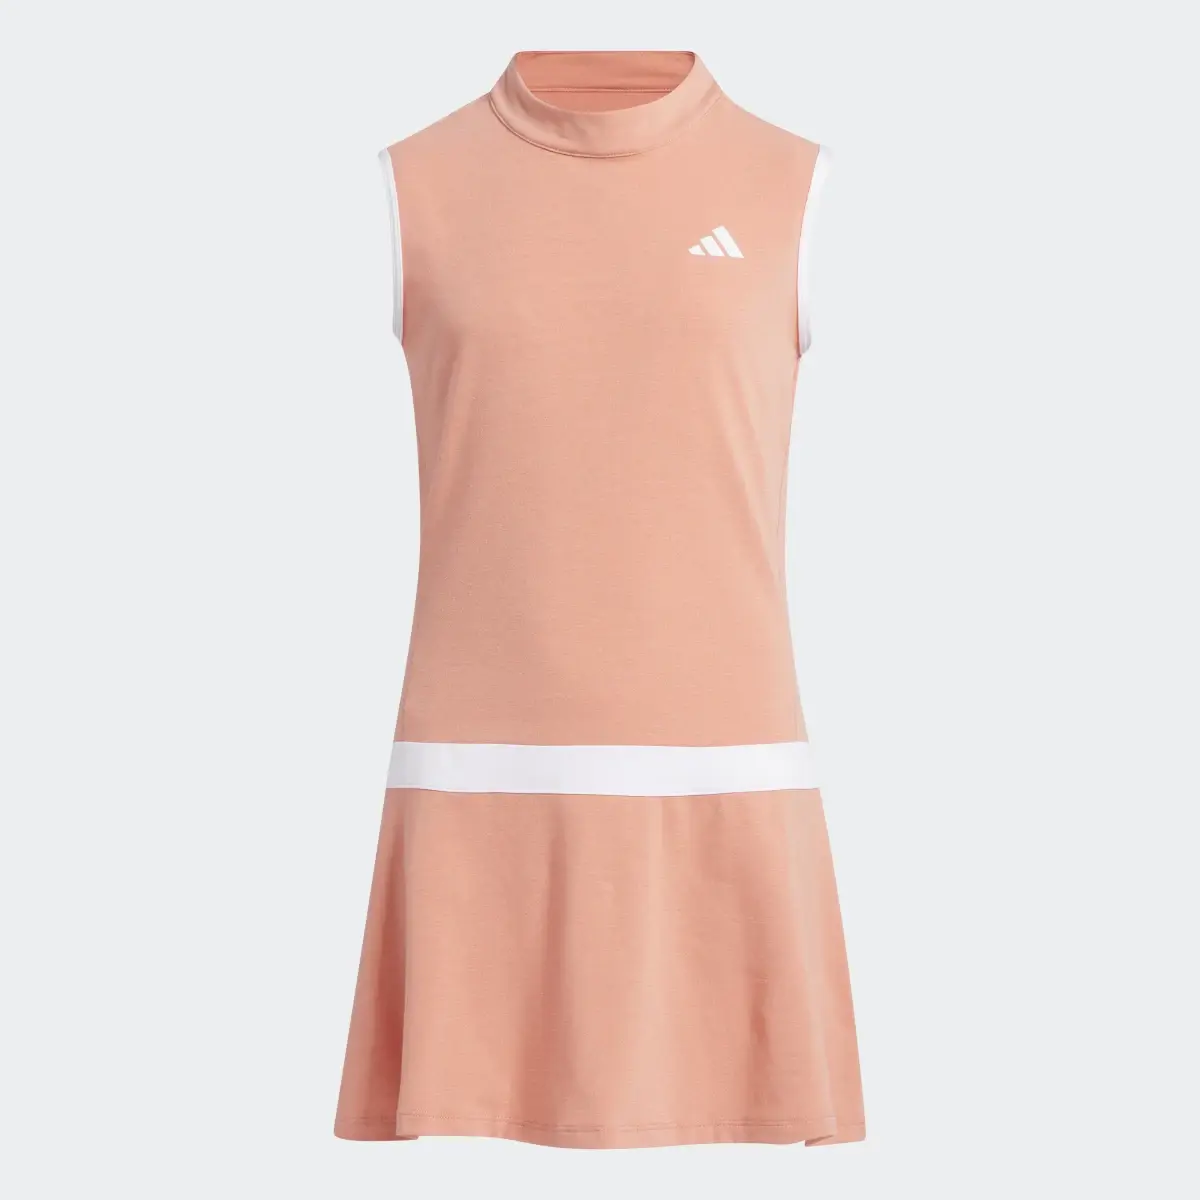 Adidas Long Sleeve Versatile Kids Kleid. 2